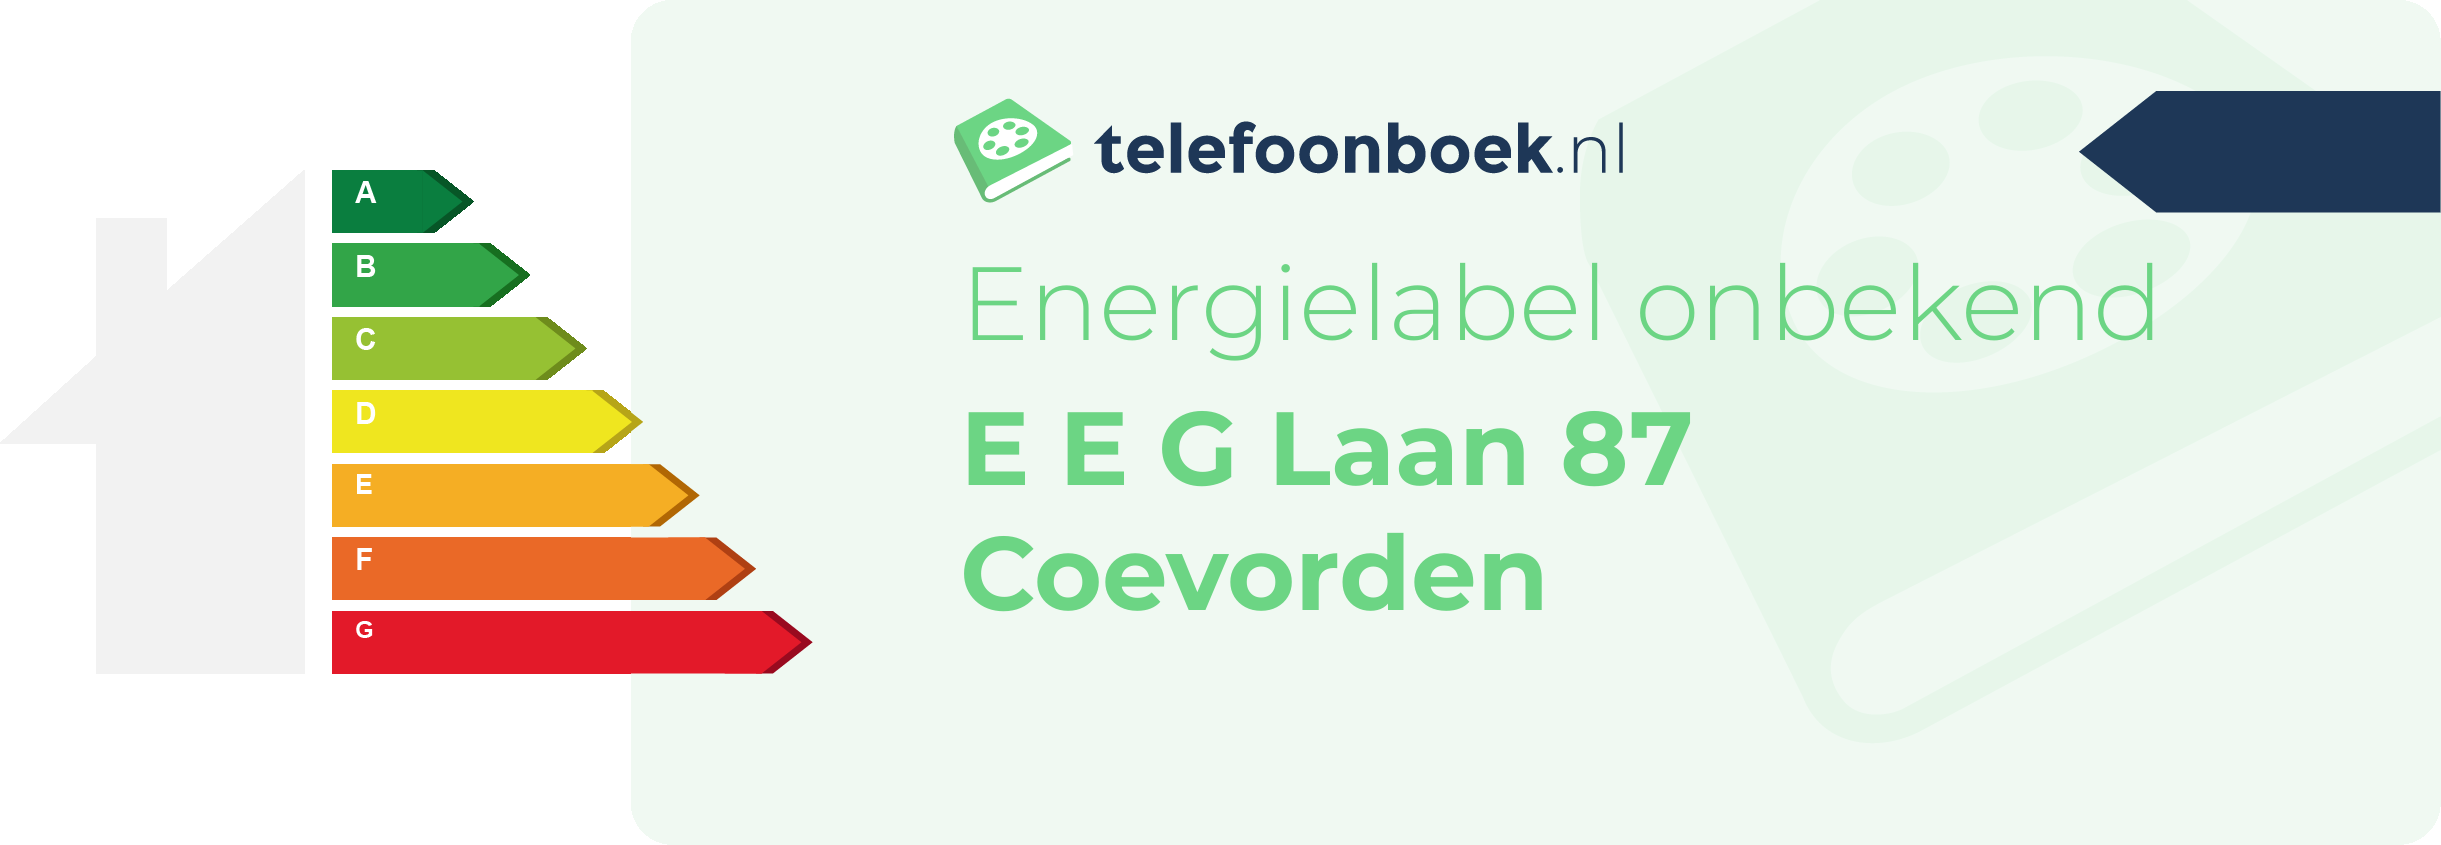 Energielabel E E G Laan 87 Coevorden